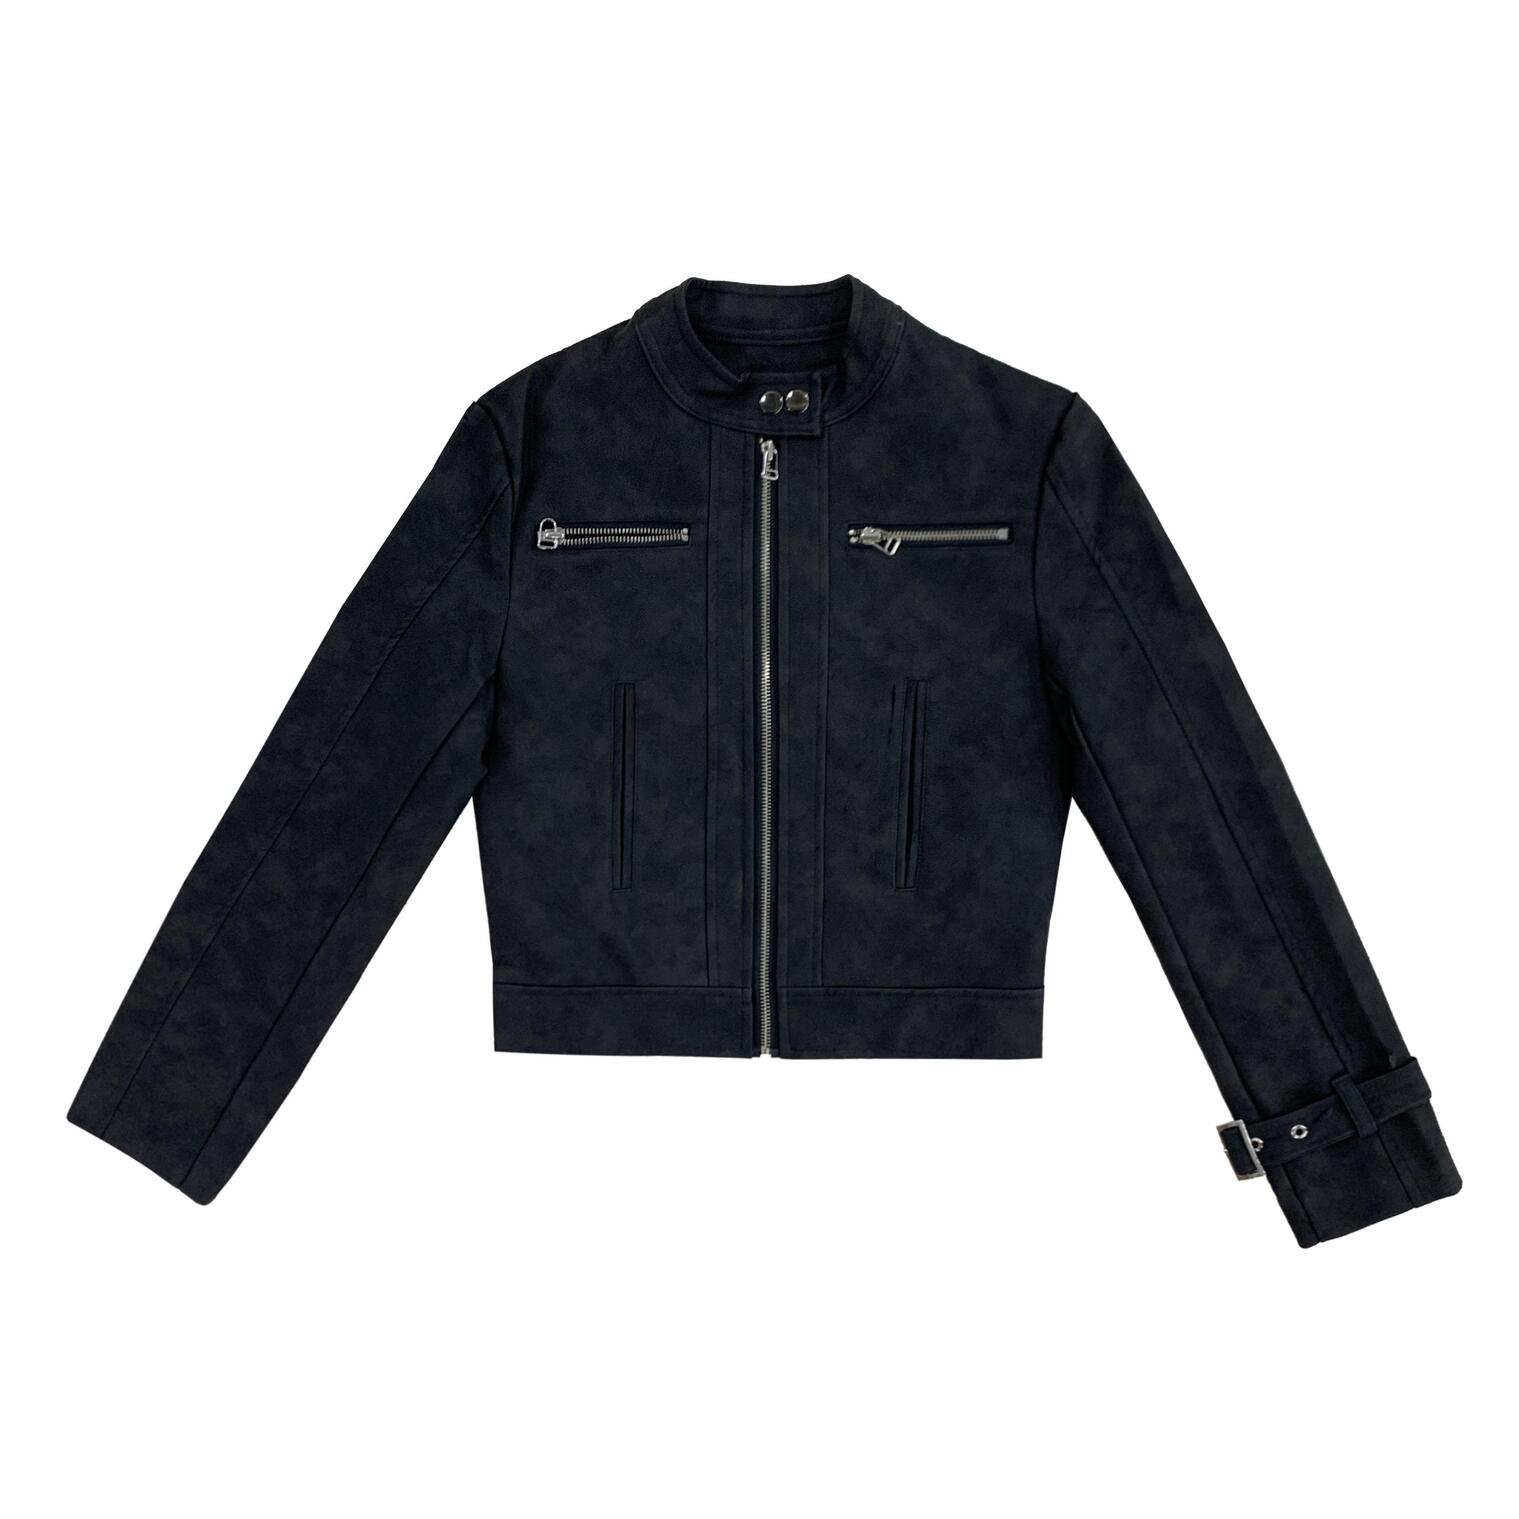 [MADE] Sober leather jacket - black